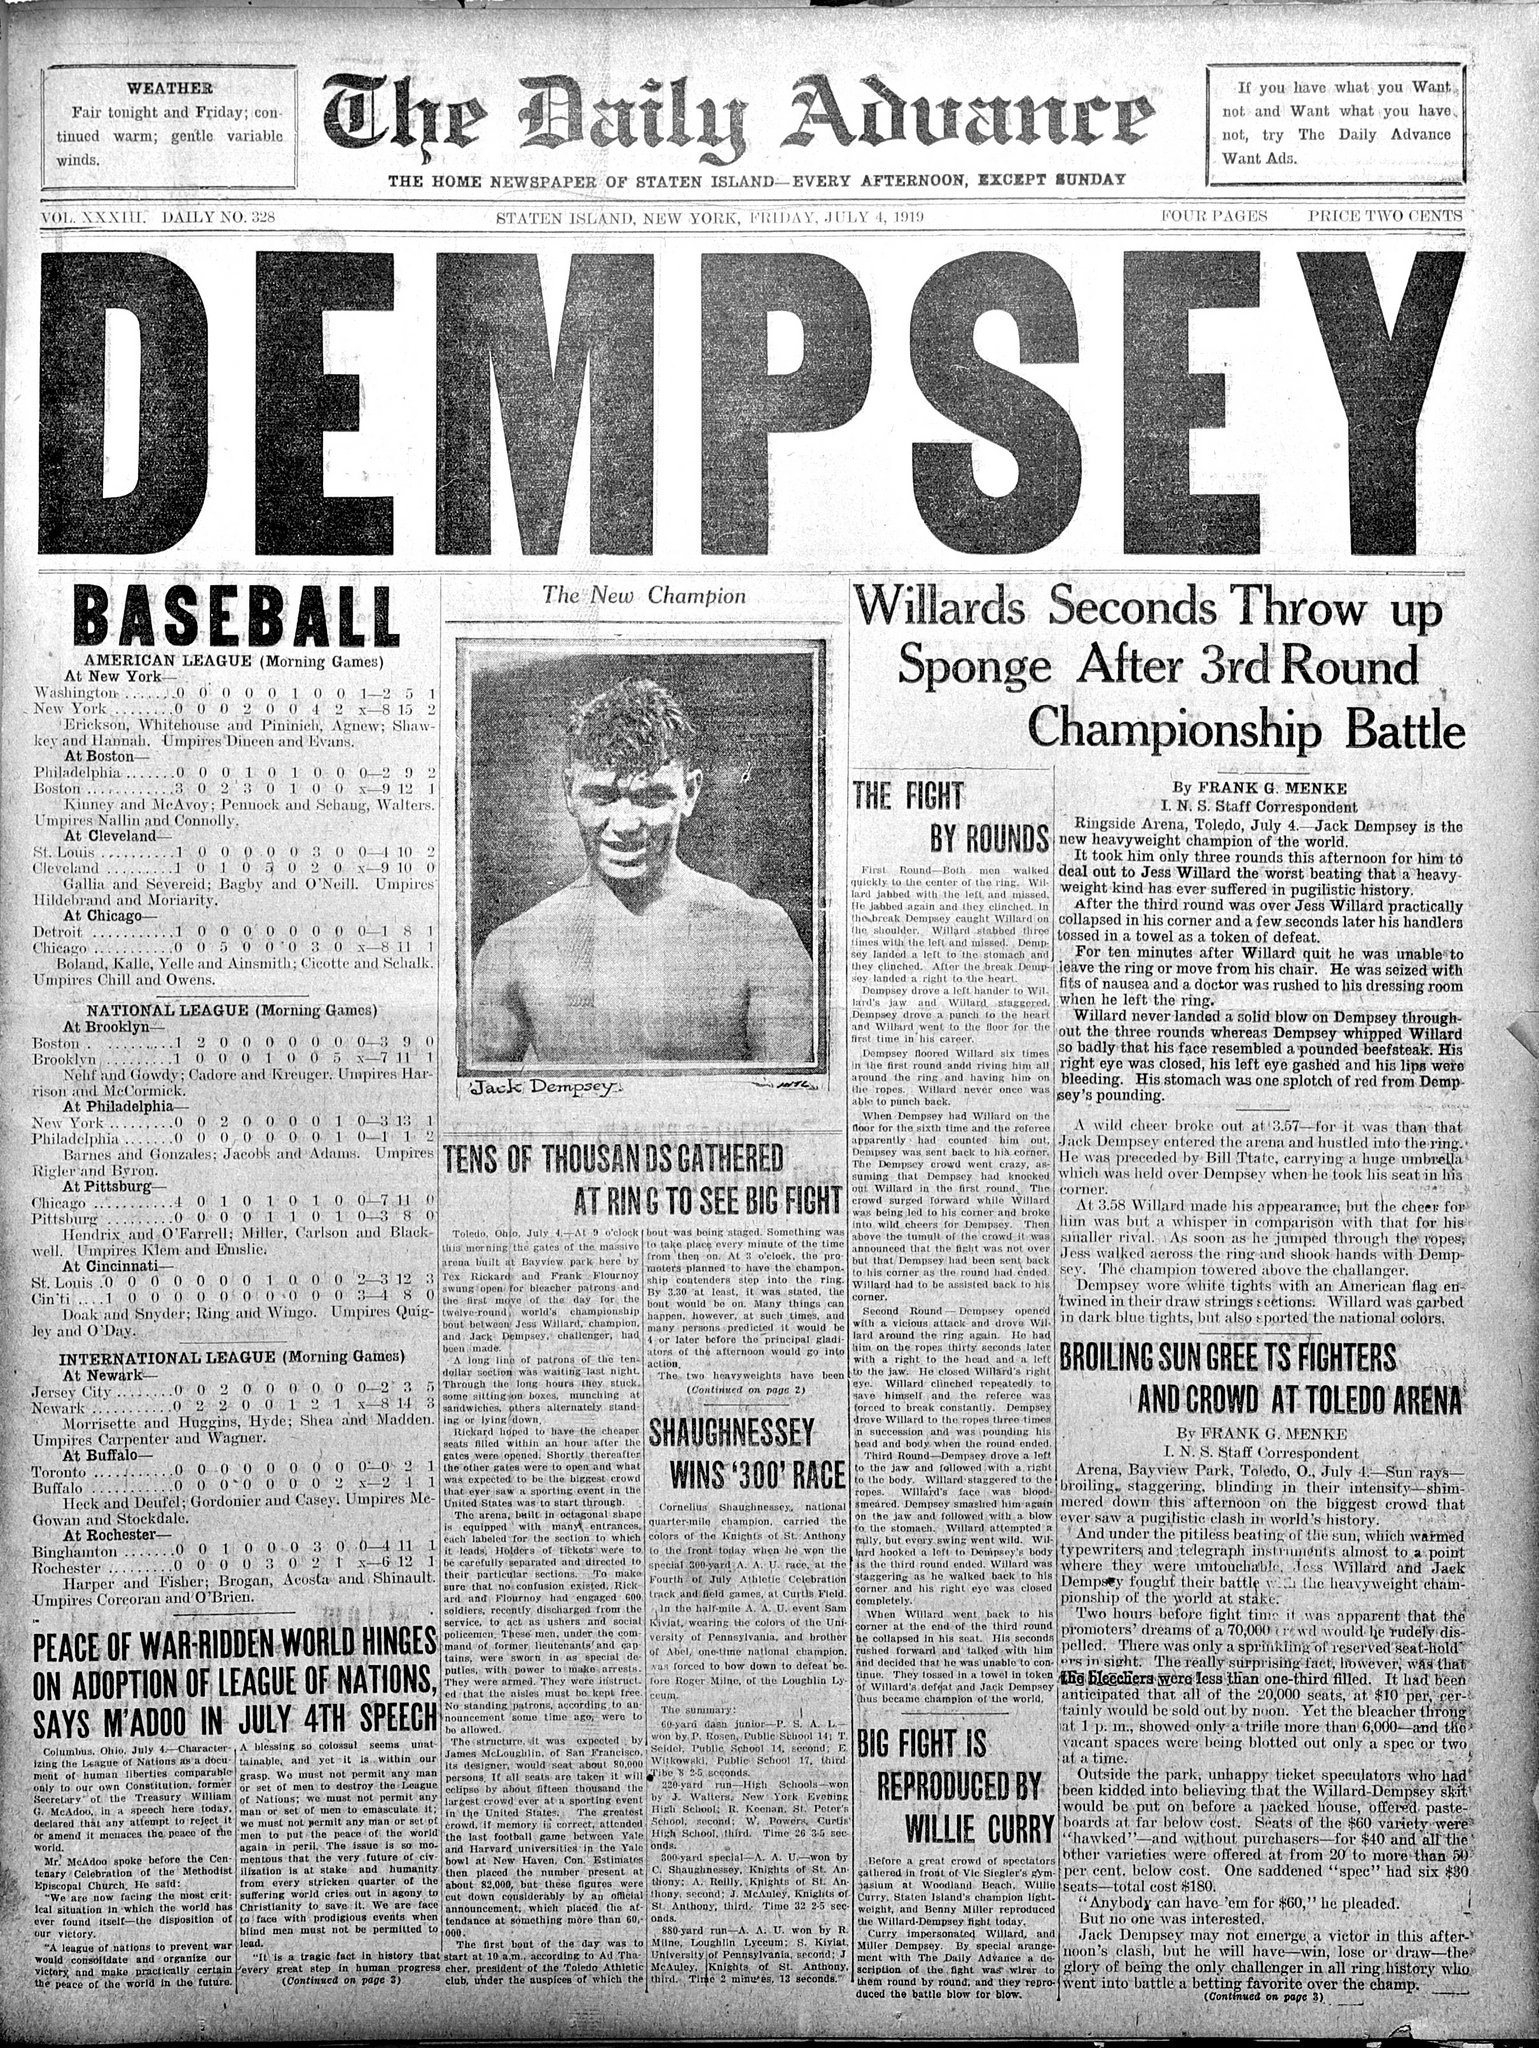 百年前新聞 スポーツ 4日 アメリカのプロボクサー ジャック デンプシー 24 が 世界ヘビー級チャンピオンとなる 王者ジェス ウィラードを 再起不可能なまでに叩きのめす 百年前新聞社 1919 07 04 新チャンピオン誕生